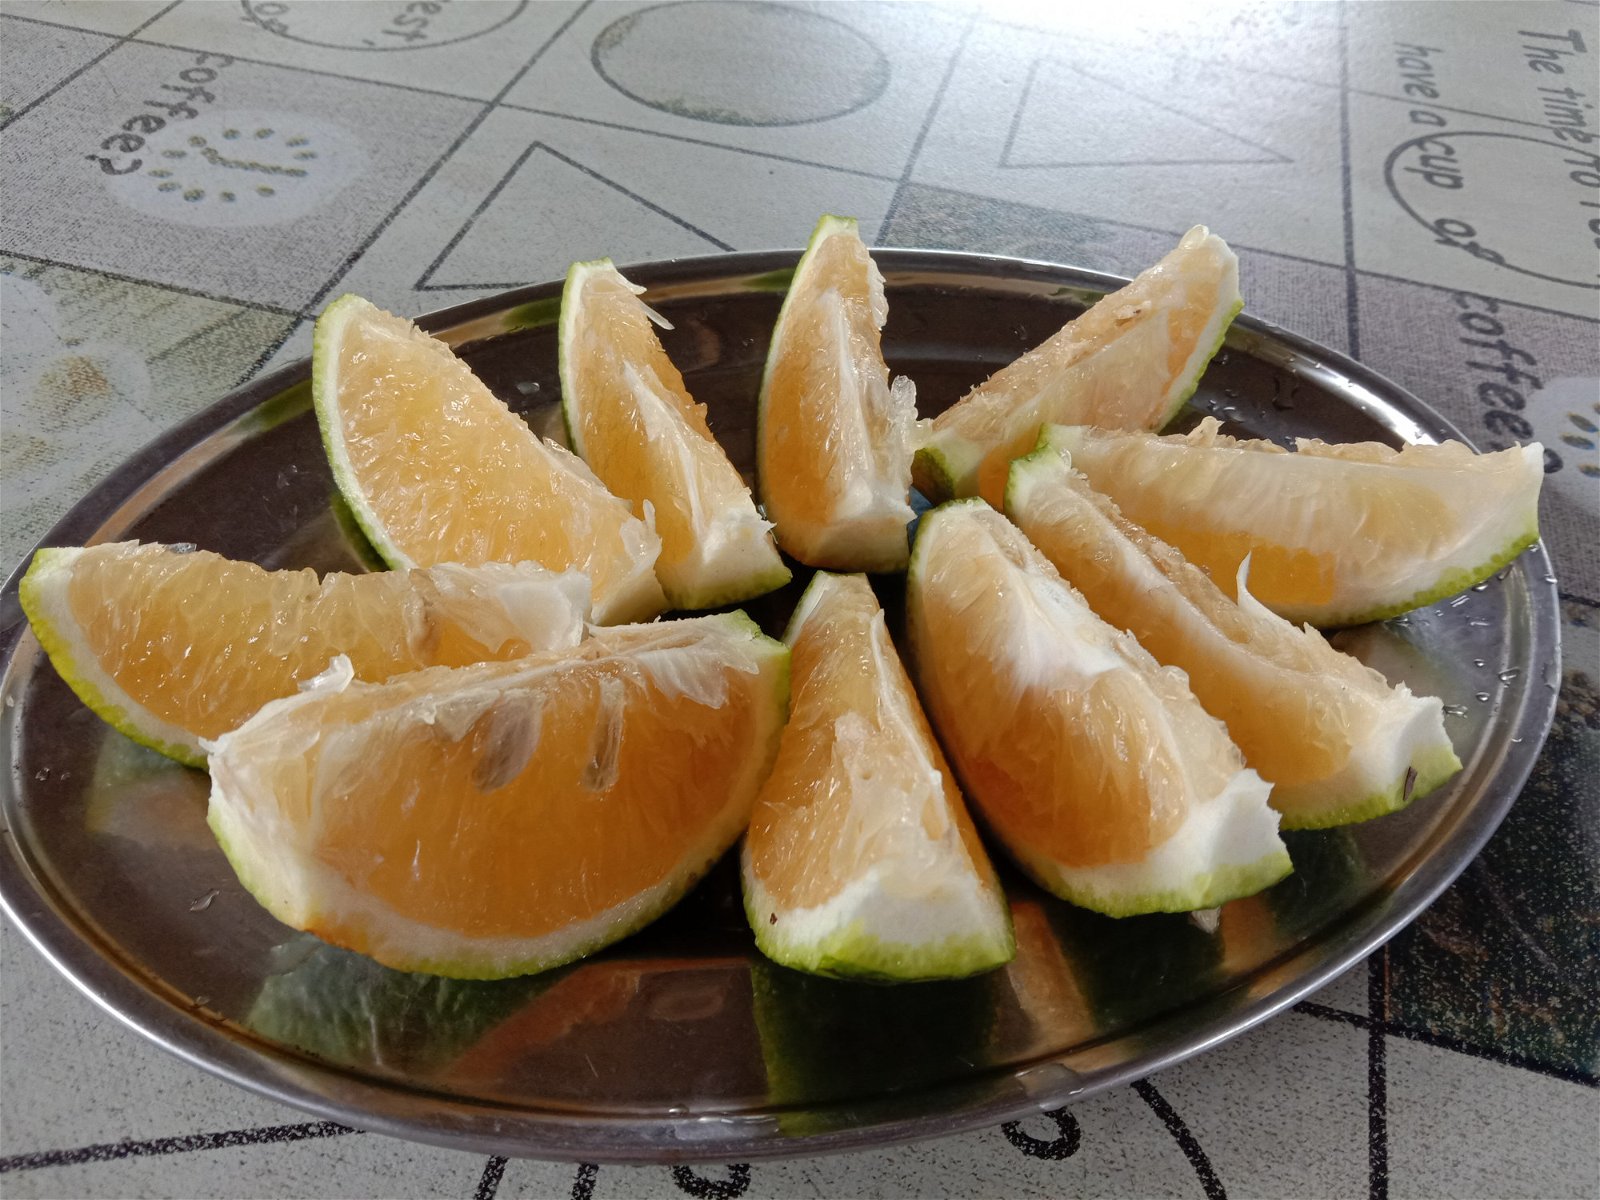 柚橙的尺寸与普通橙同样大小，方便柚子爱好者一次过吃完。